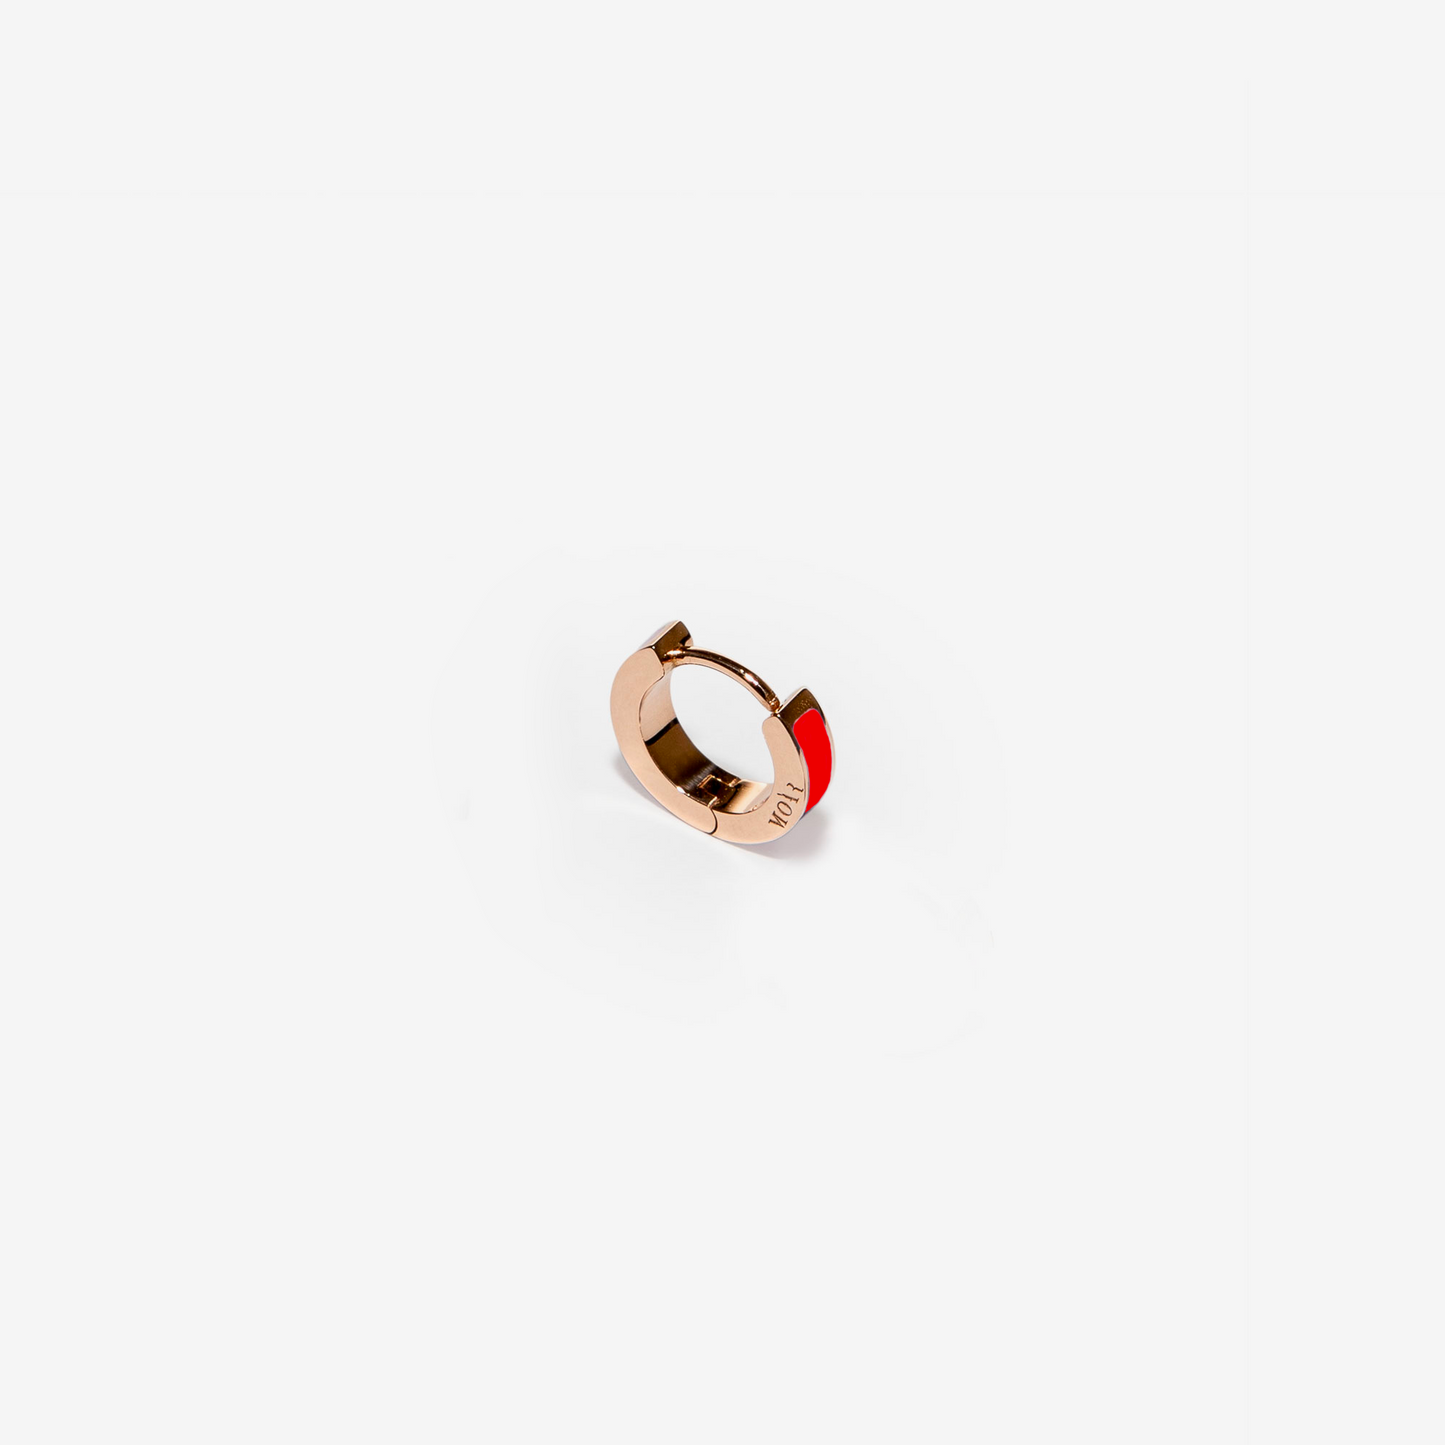 Inside red single earring